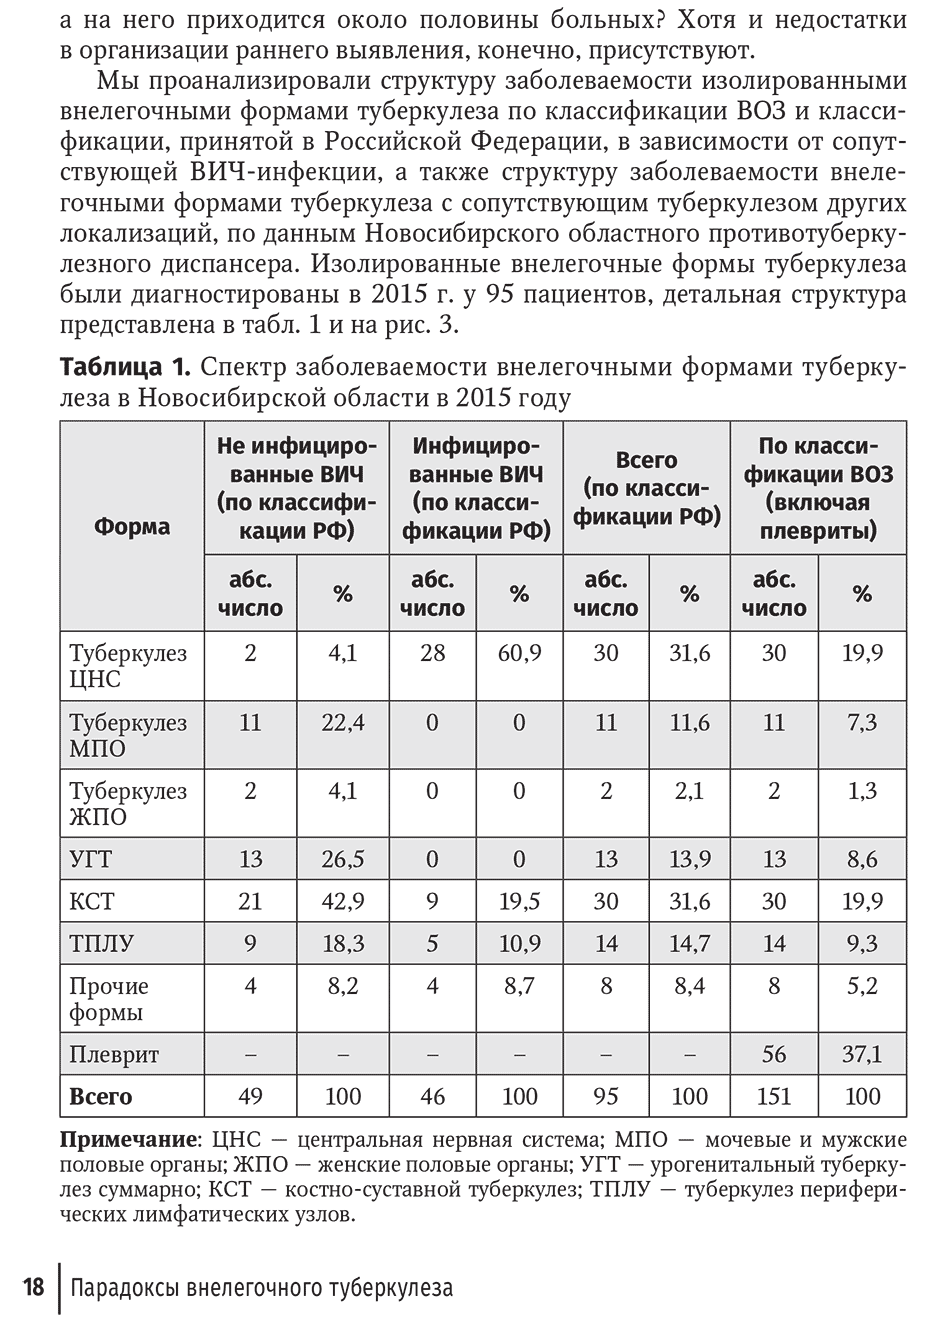 Таблица 1. Спектр заболеваемости внелегочными формами туберкулеза в Новосибирской области в 2015 году